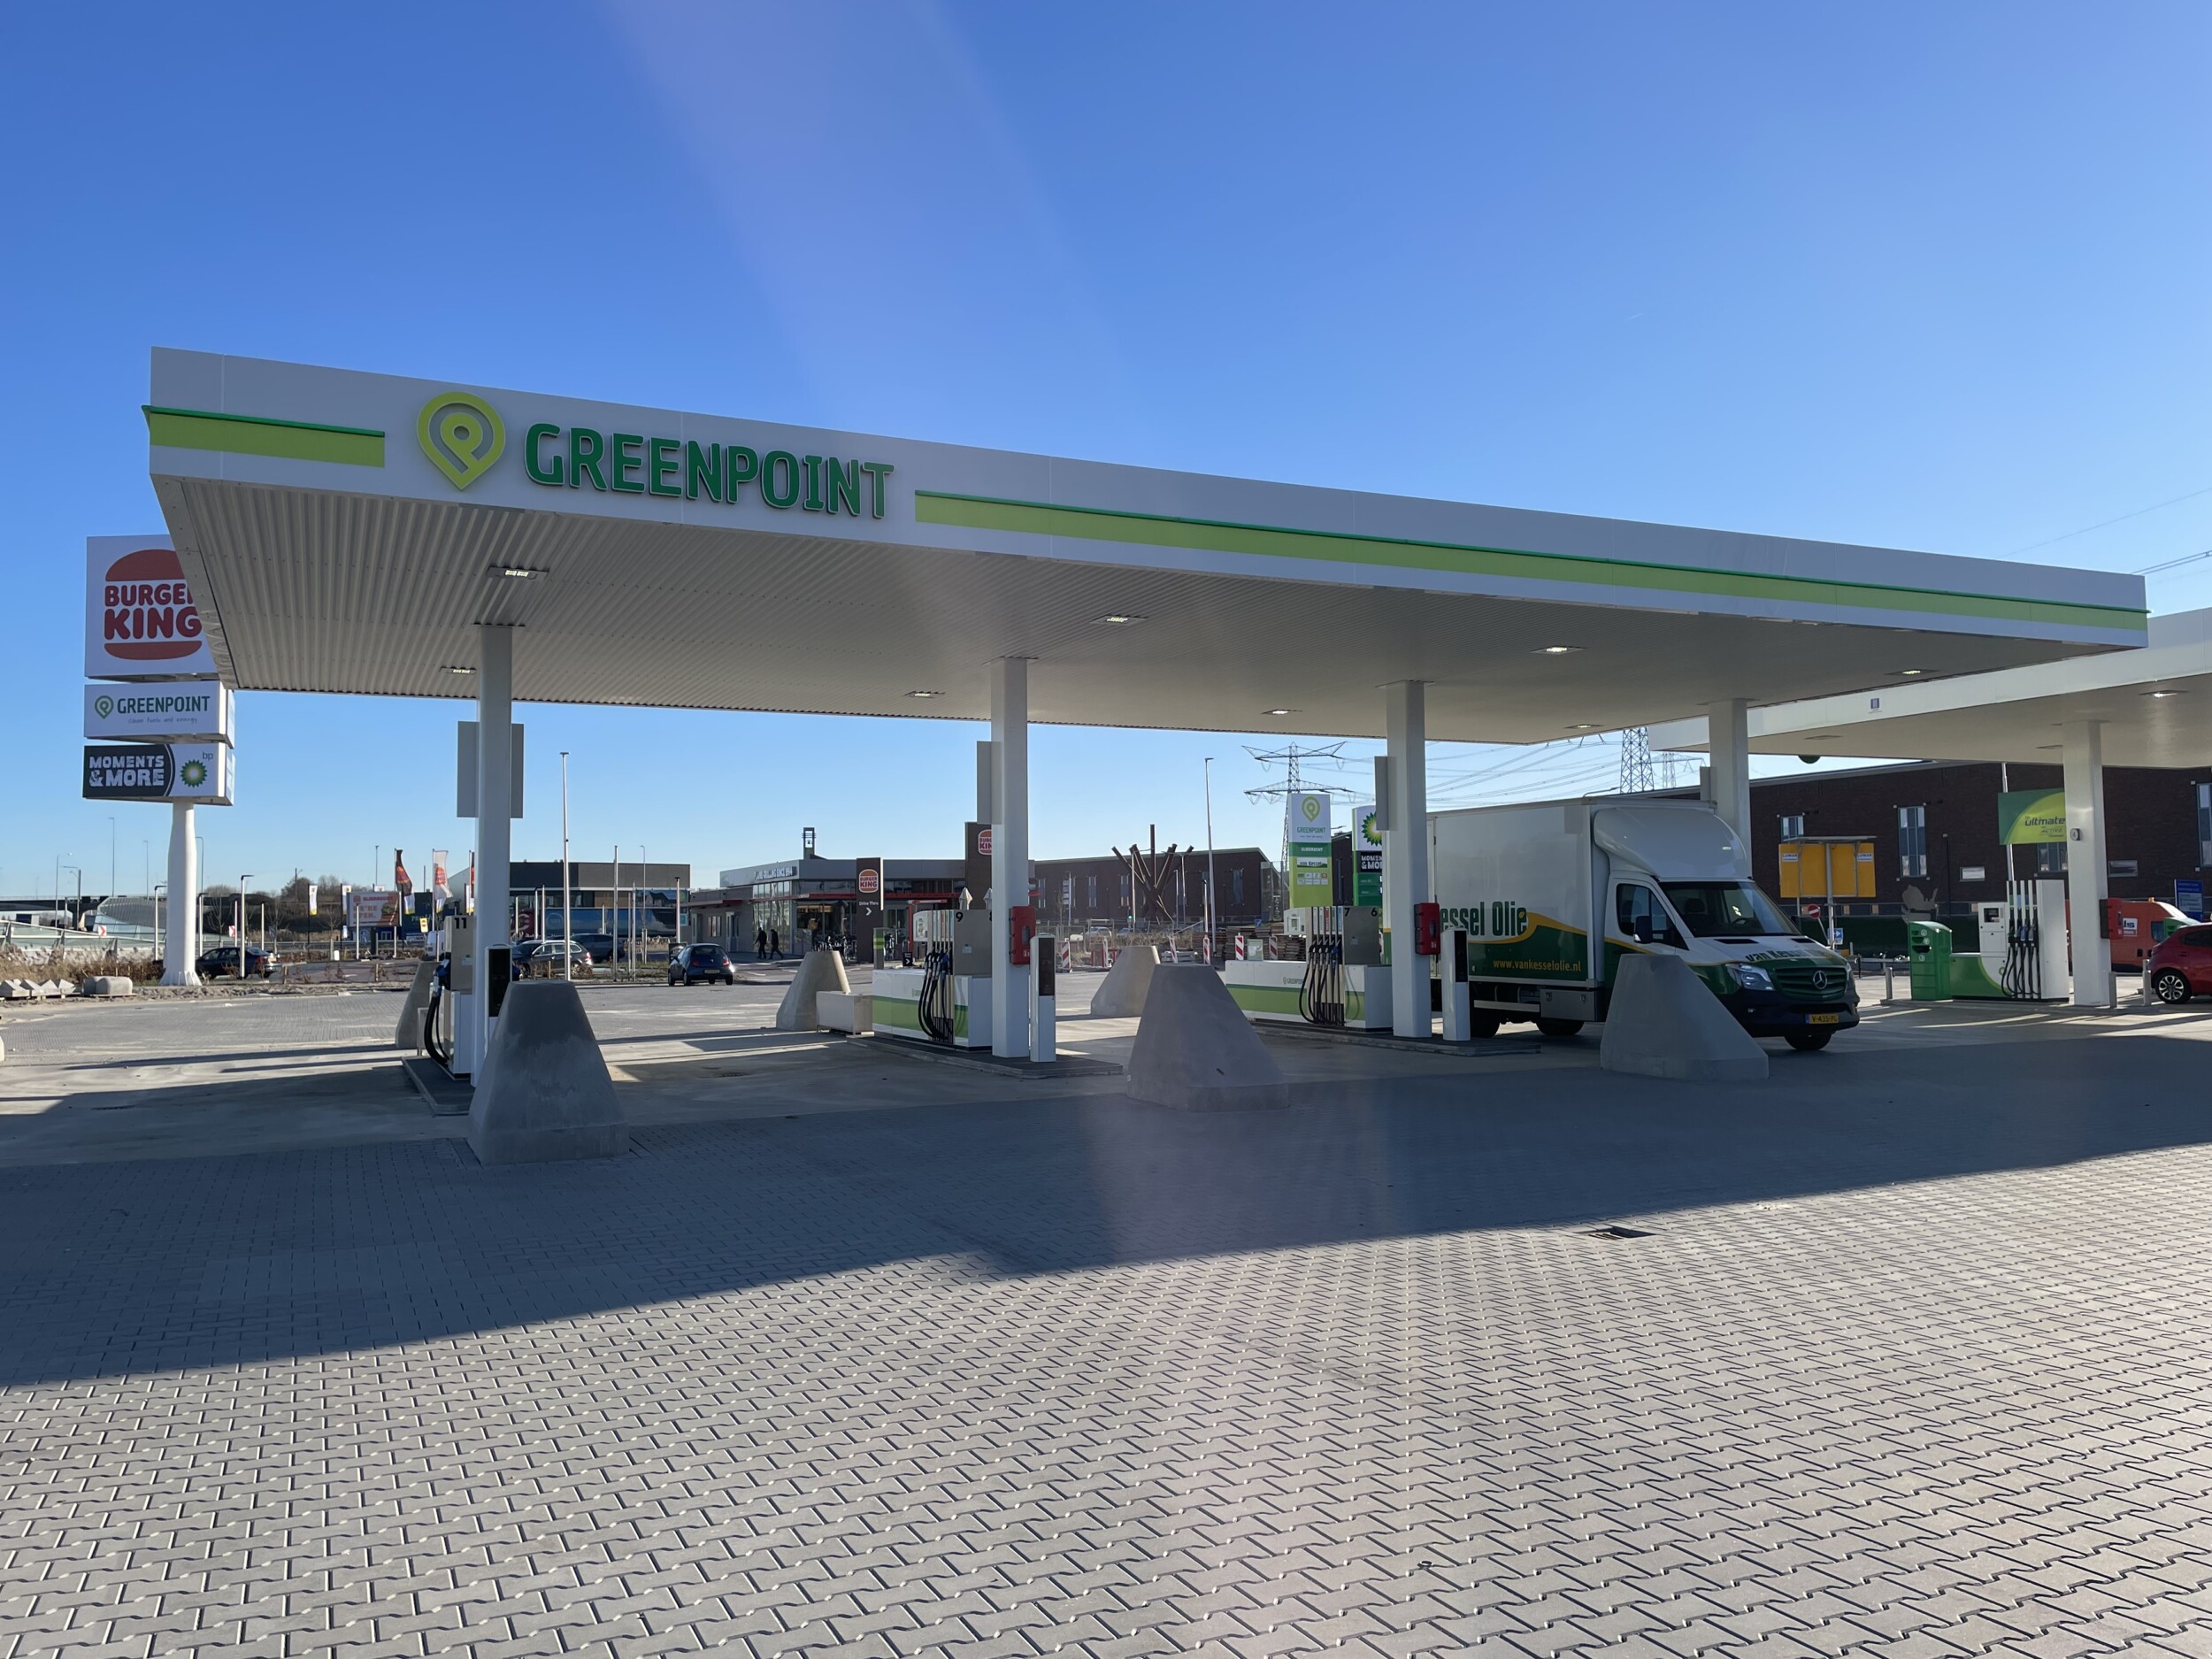 Van Kessel opent nieuw Greenpoint station in Sliedrecht - Van Kessel